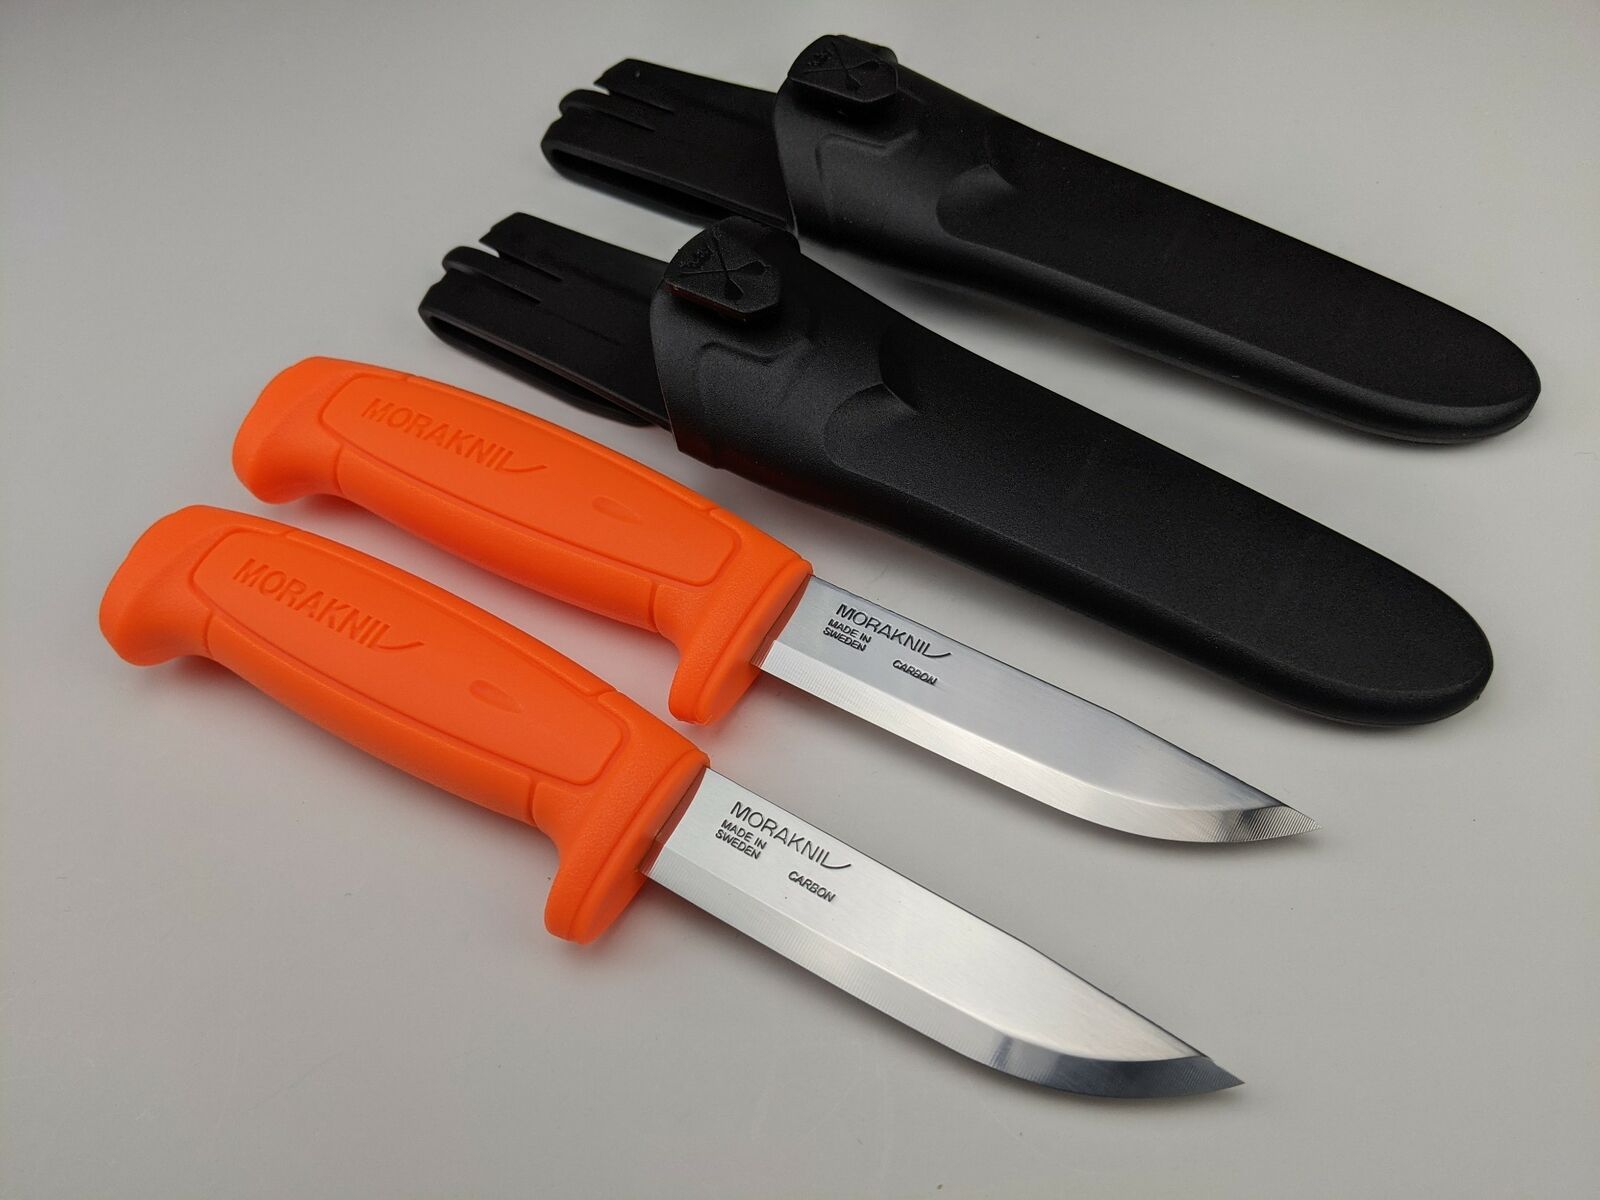 2 Pack Lot - Morakniv Basic 511 Knife & Sheath - 2 Orange Handle Mora Knives Morakniv